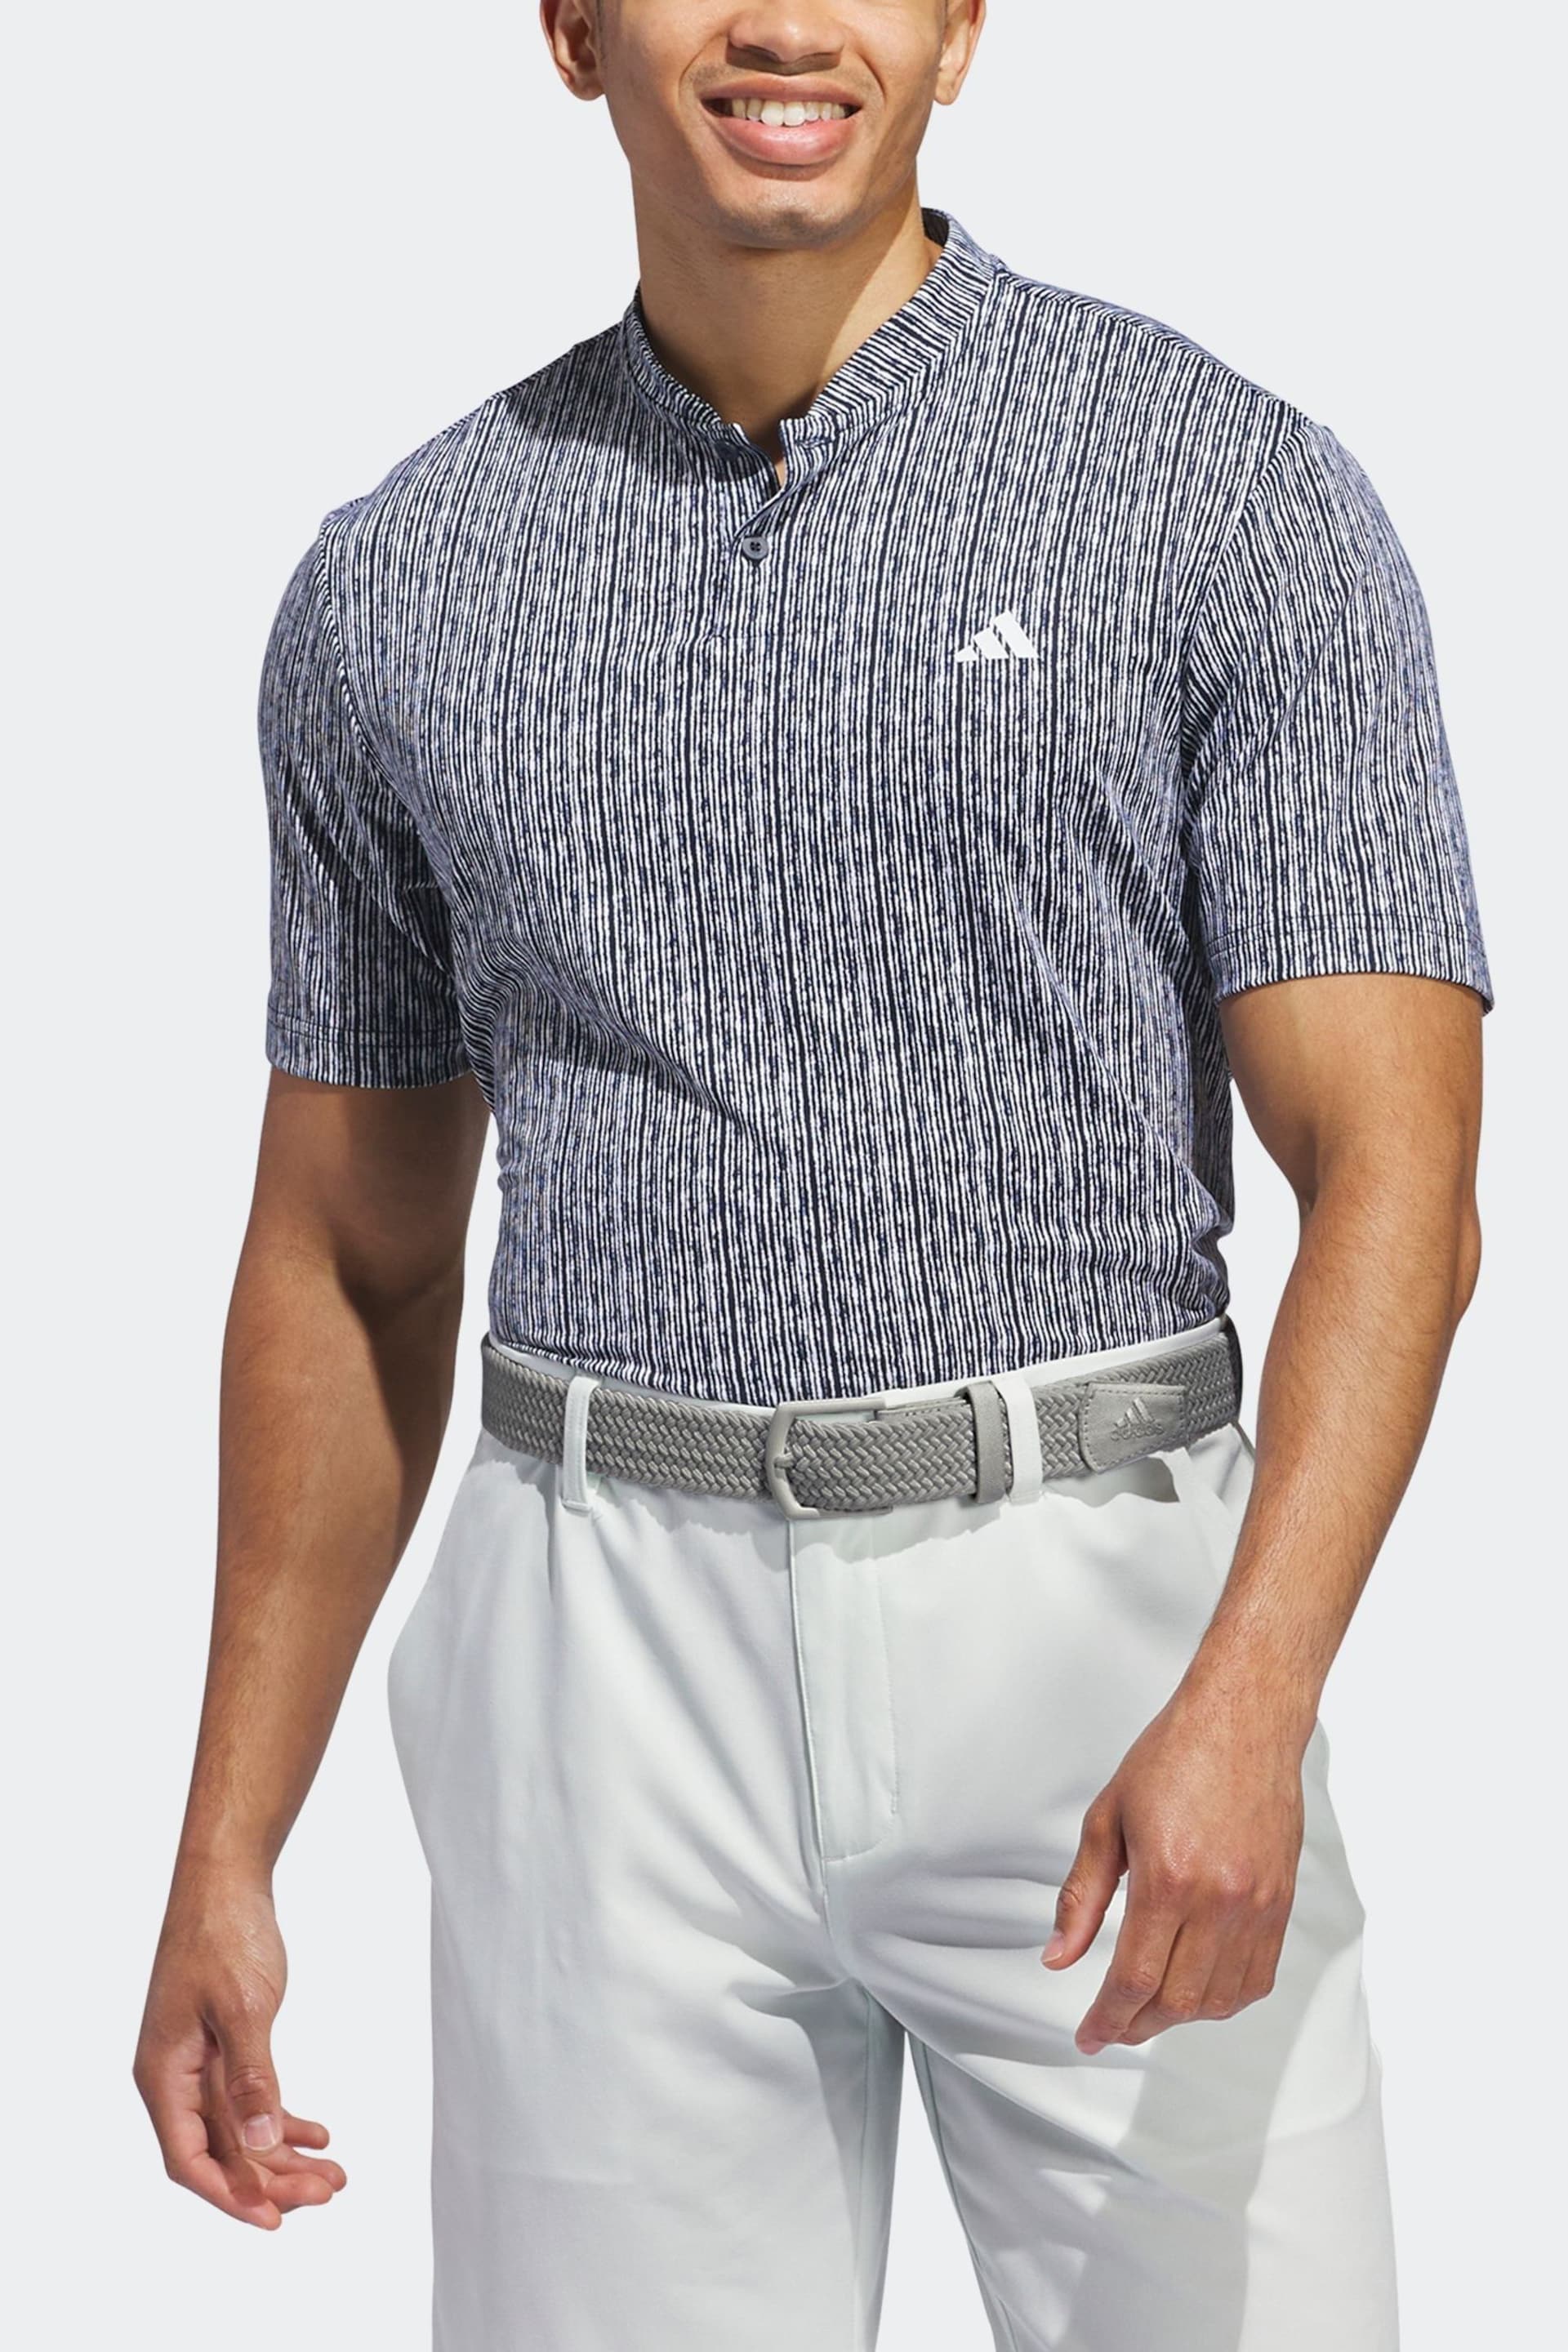 adidas Golf Ultimate 365 Printed Polo Shirt - Image 3 of 7